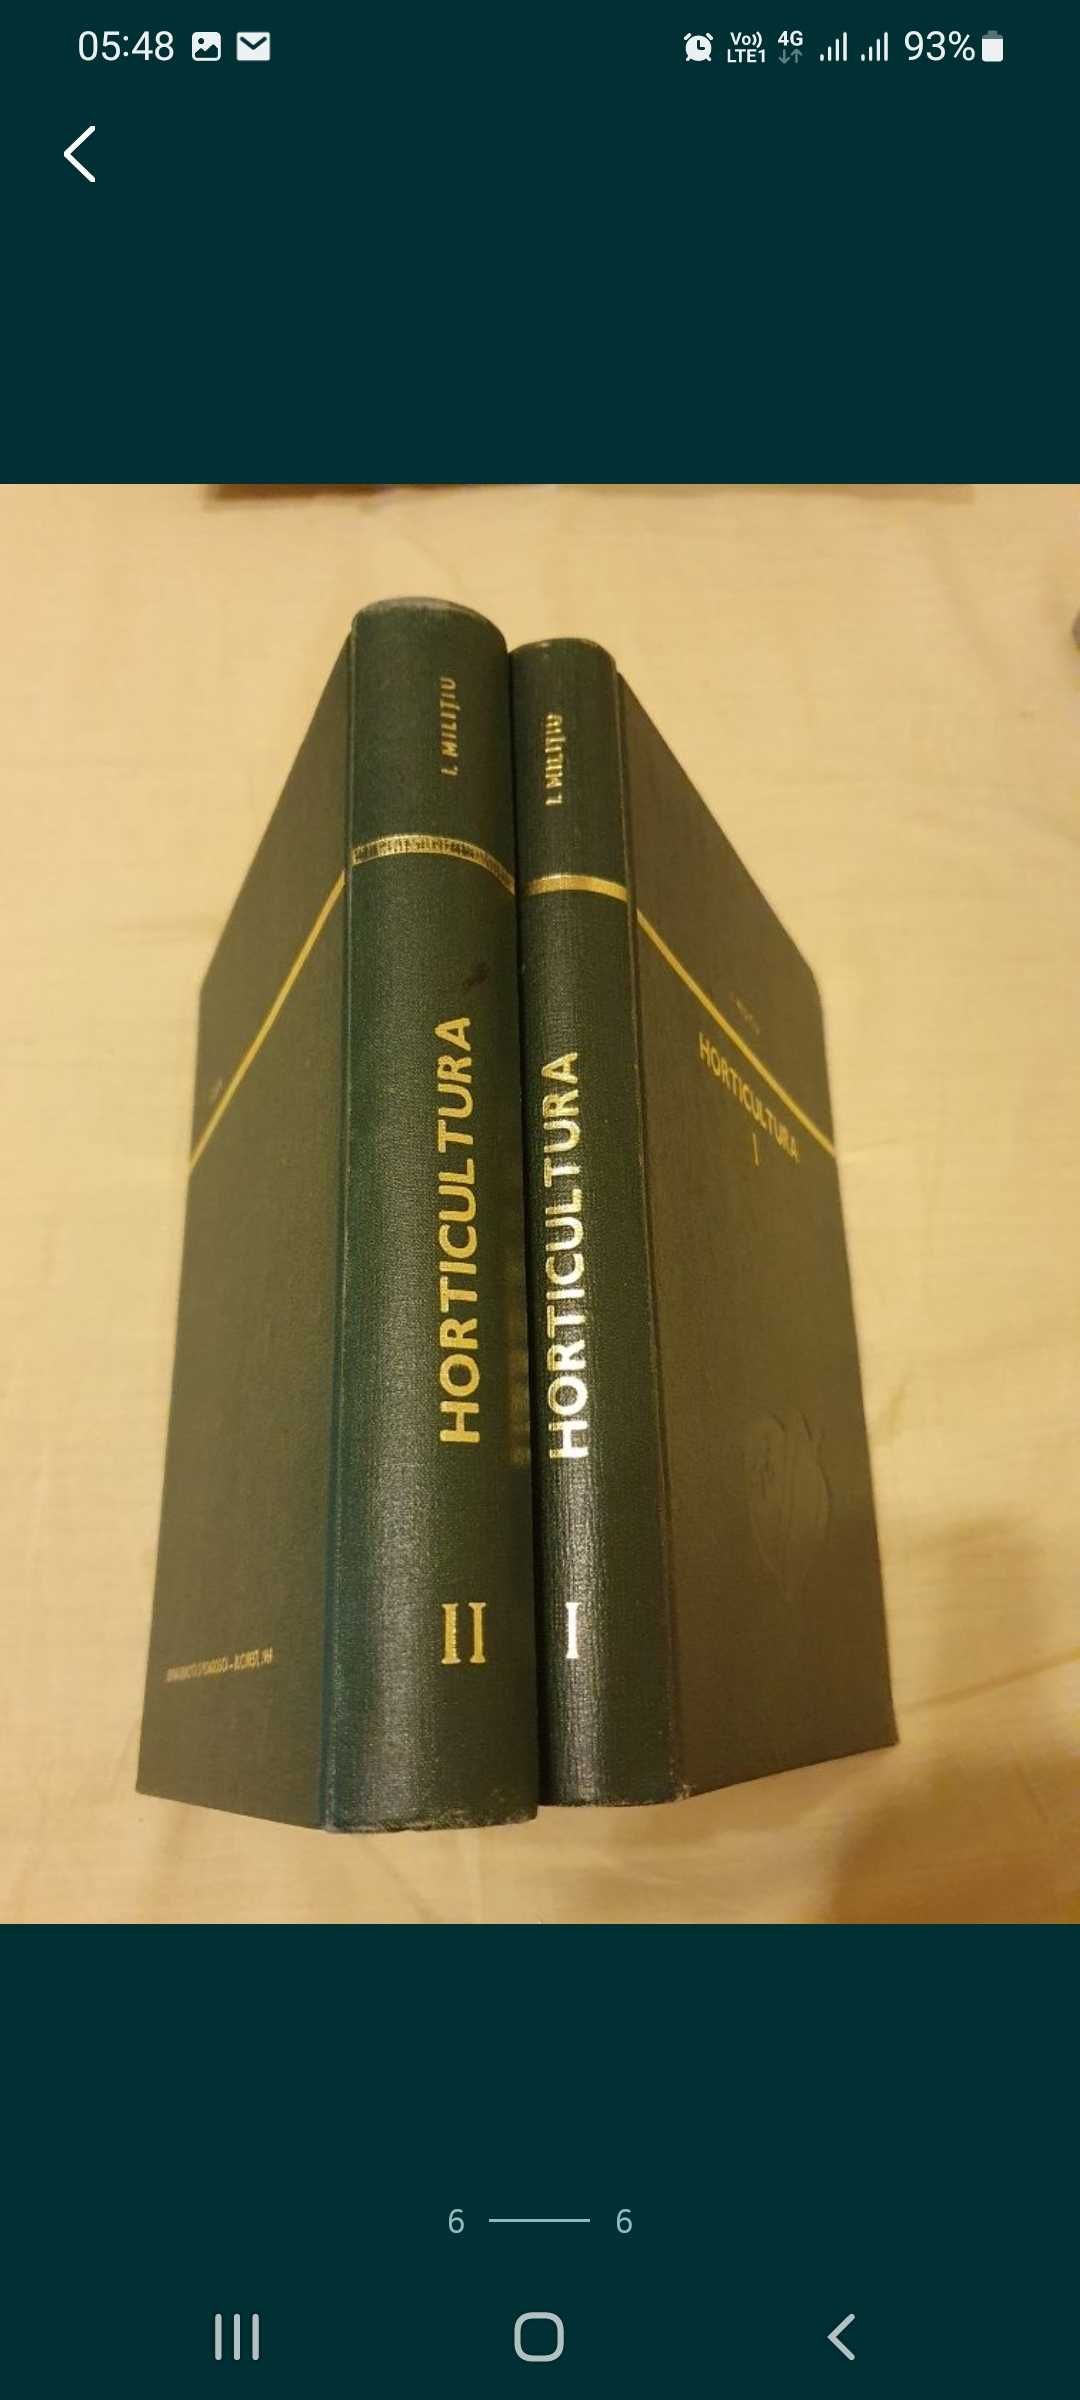 Horticultura, vol 1 și 2, I. Militiu, 1967 și 1969, stare foarte bună.